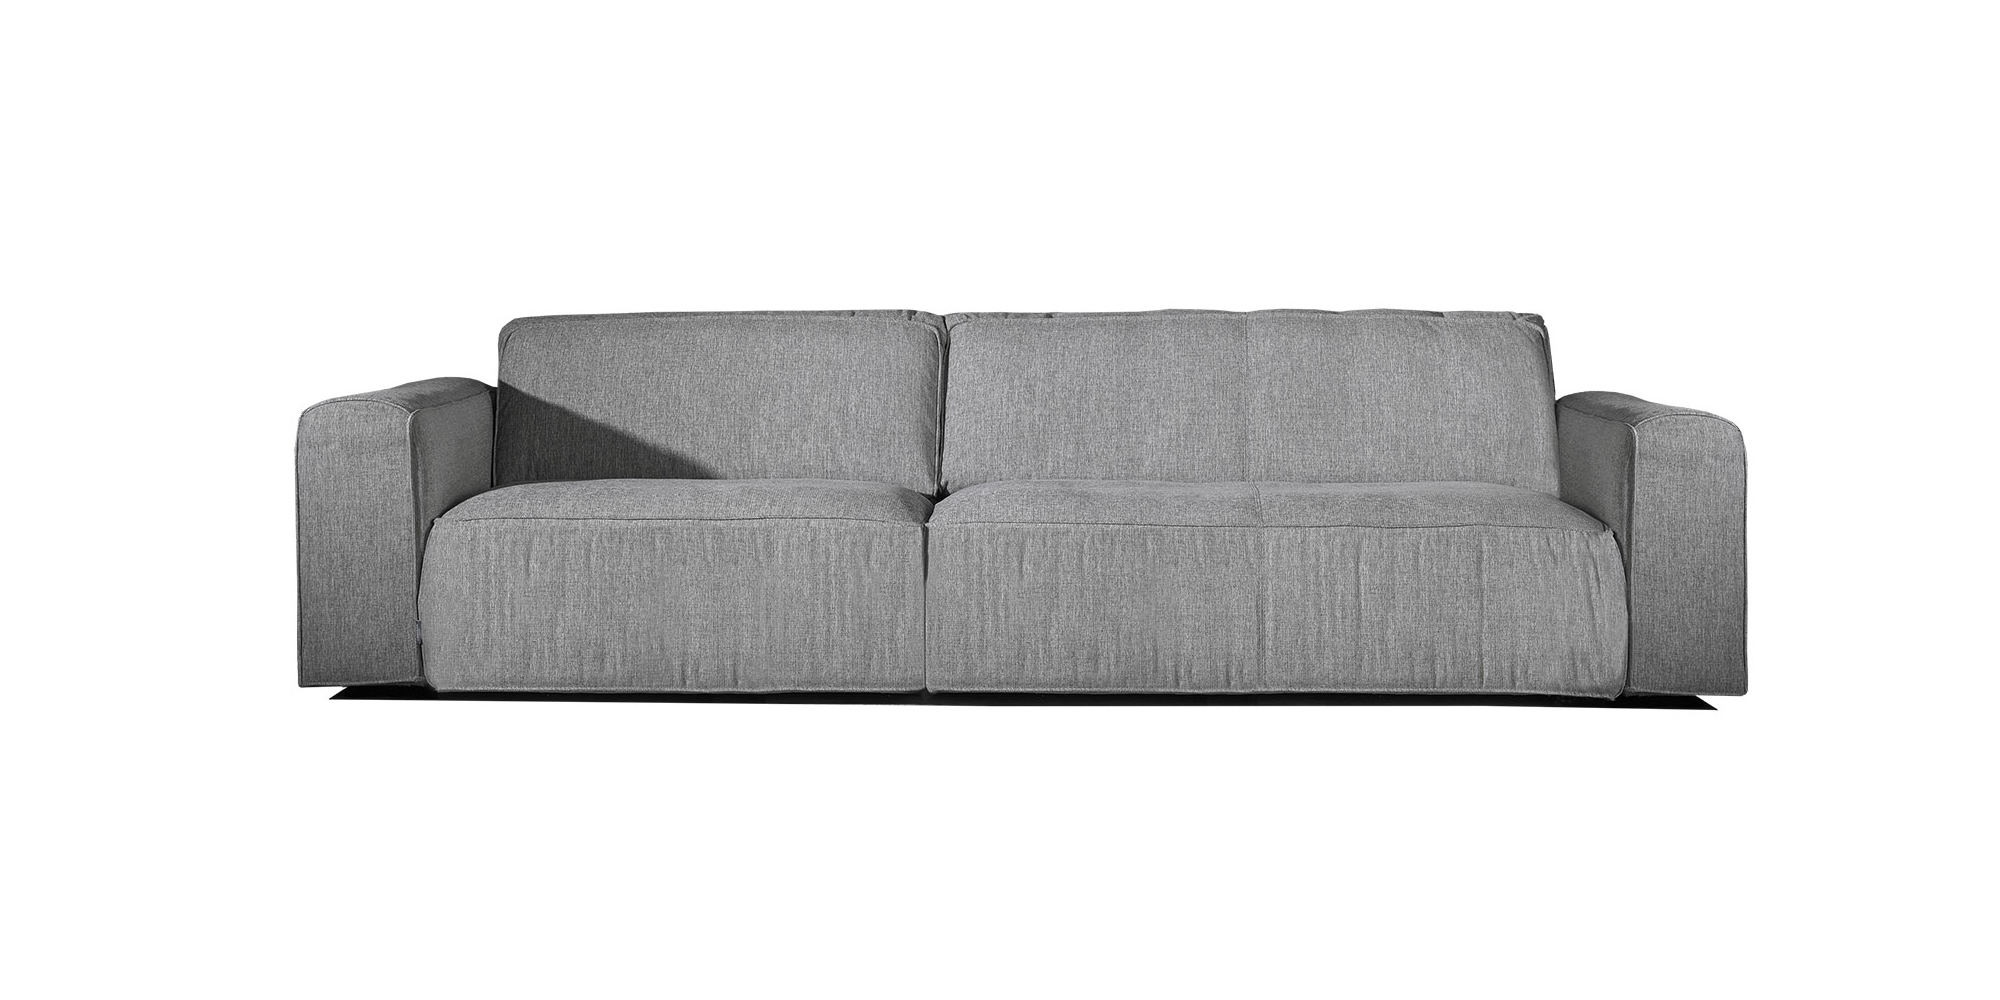 contemporary sofas, modern sofas, comfy luxury sofas